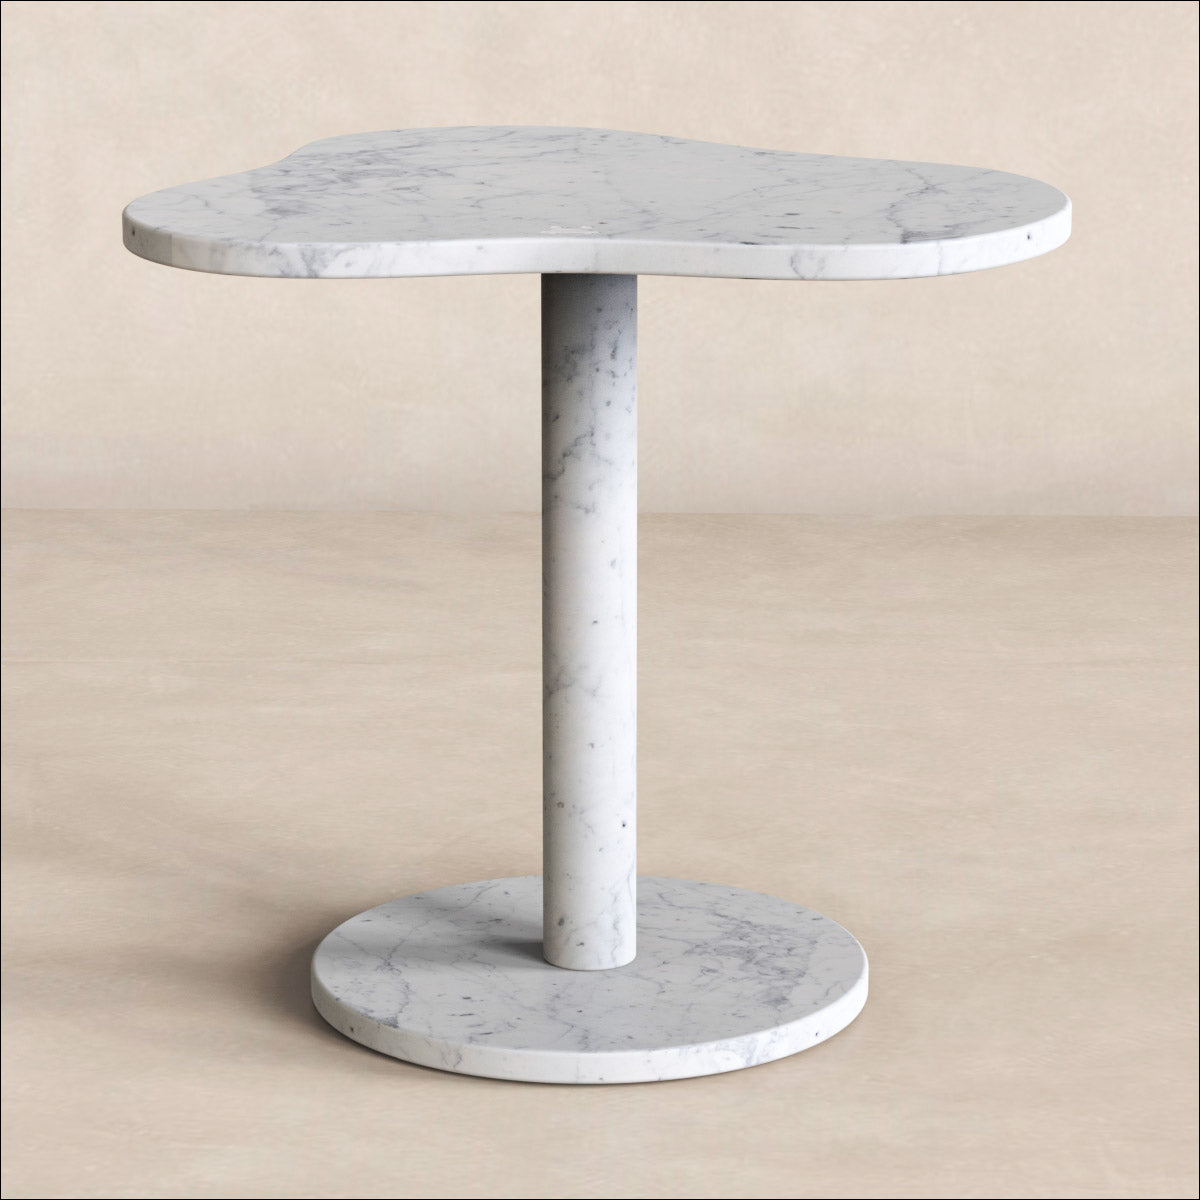 OIXDESIGN CloudDream Short Side Table, Italian Carrara Marble, Micro Scene Graph, Front View